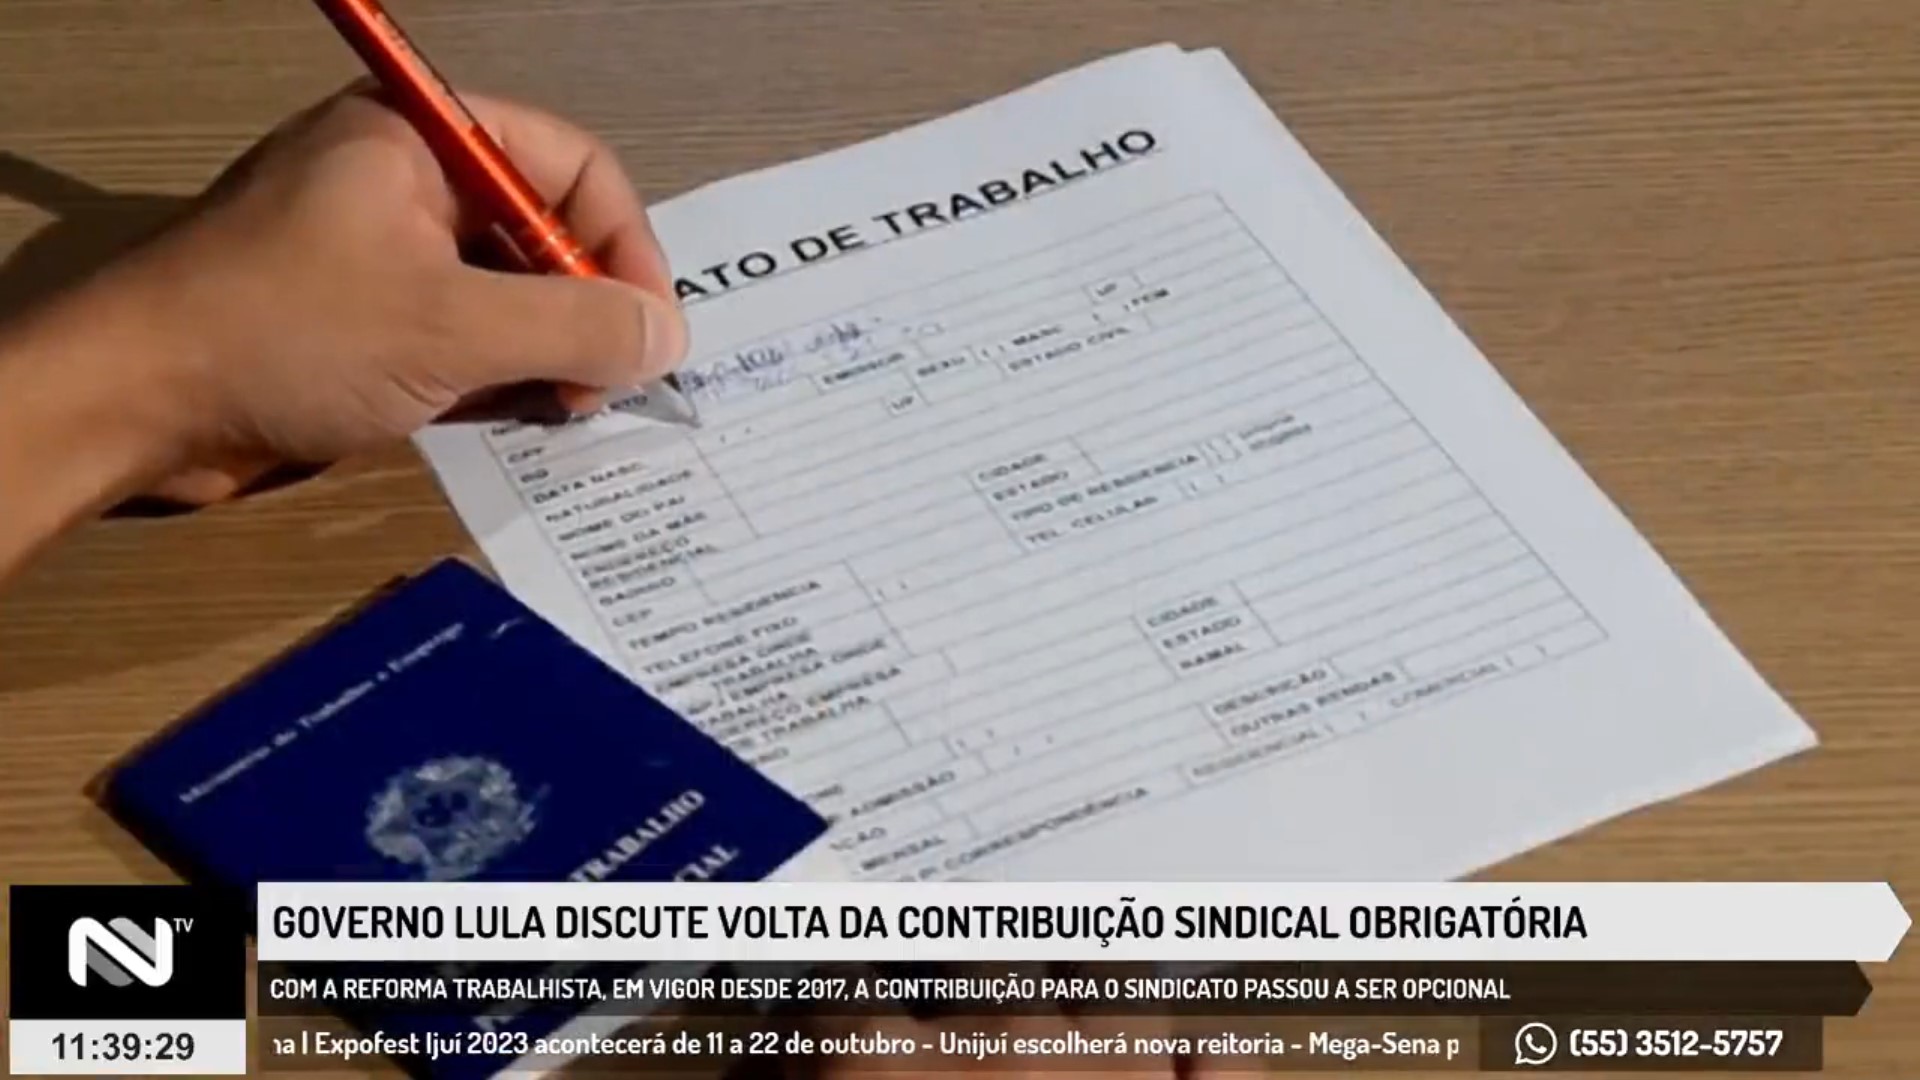 NTV: Governo Lula discute volta da contribuição sindical obrigatória